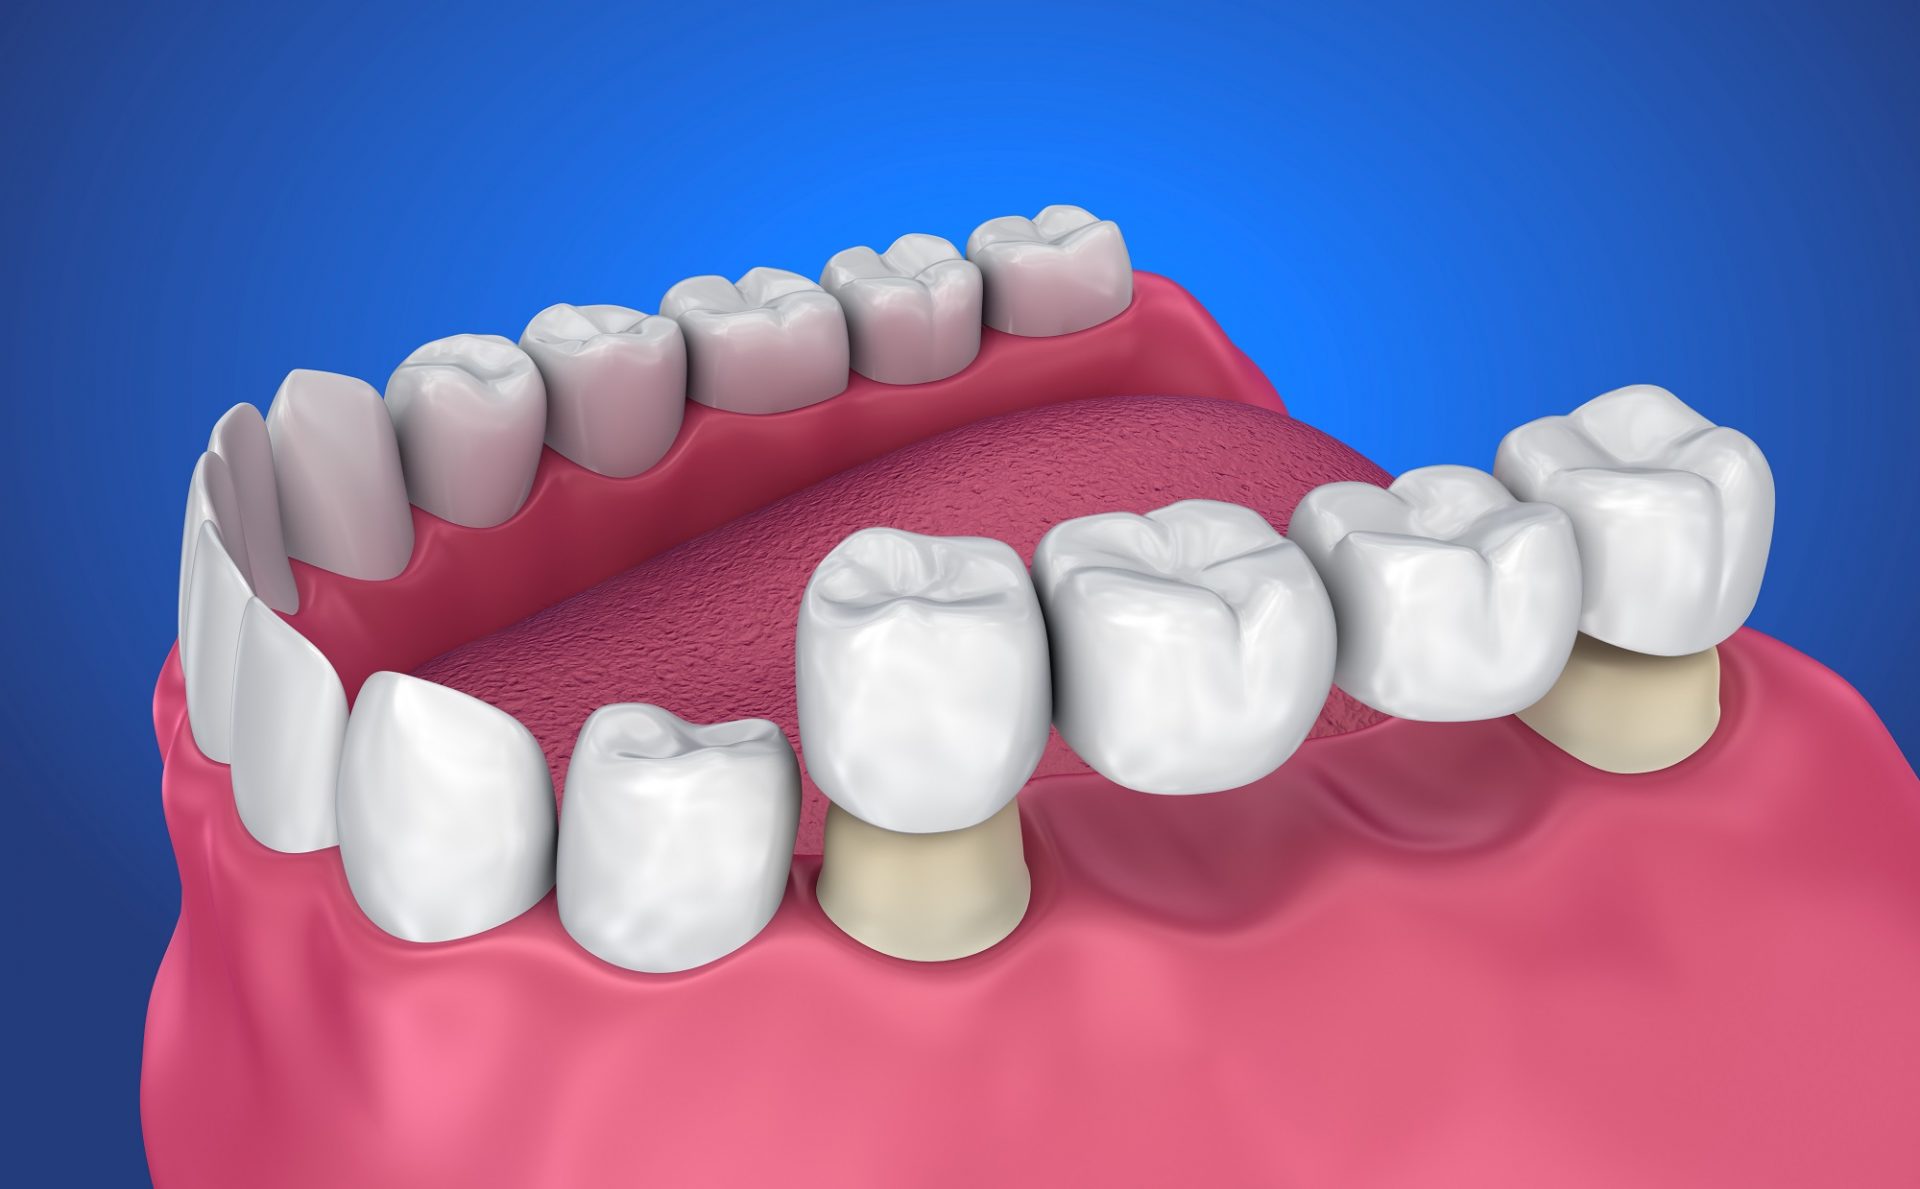 Fixed Dental Bridges